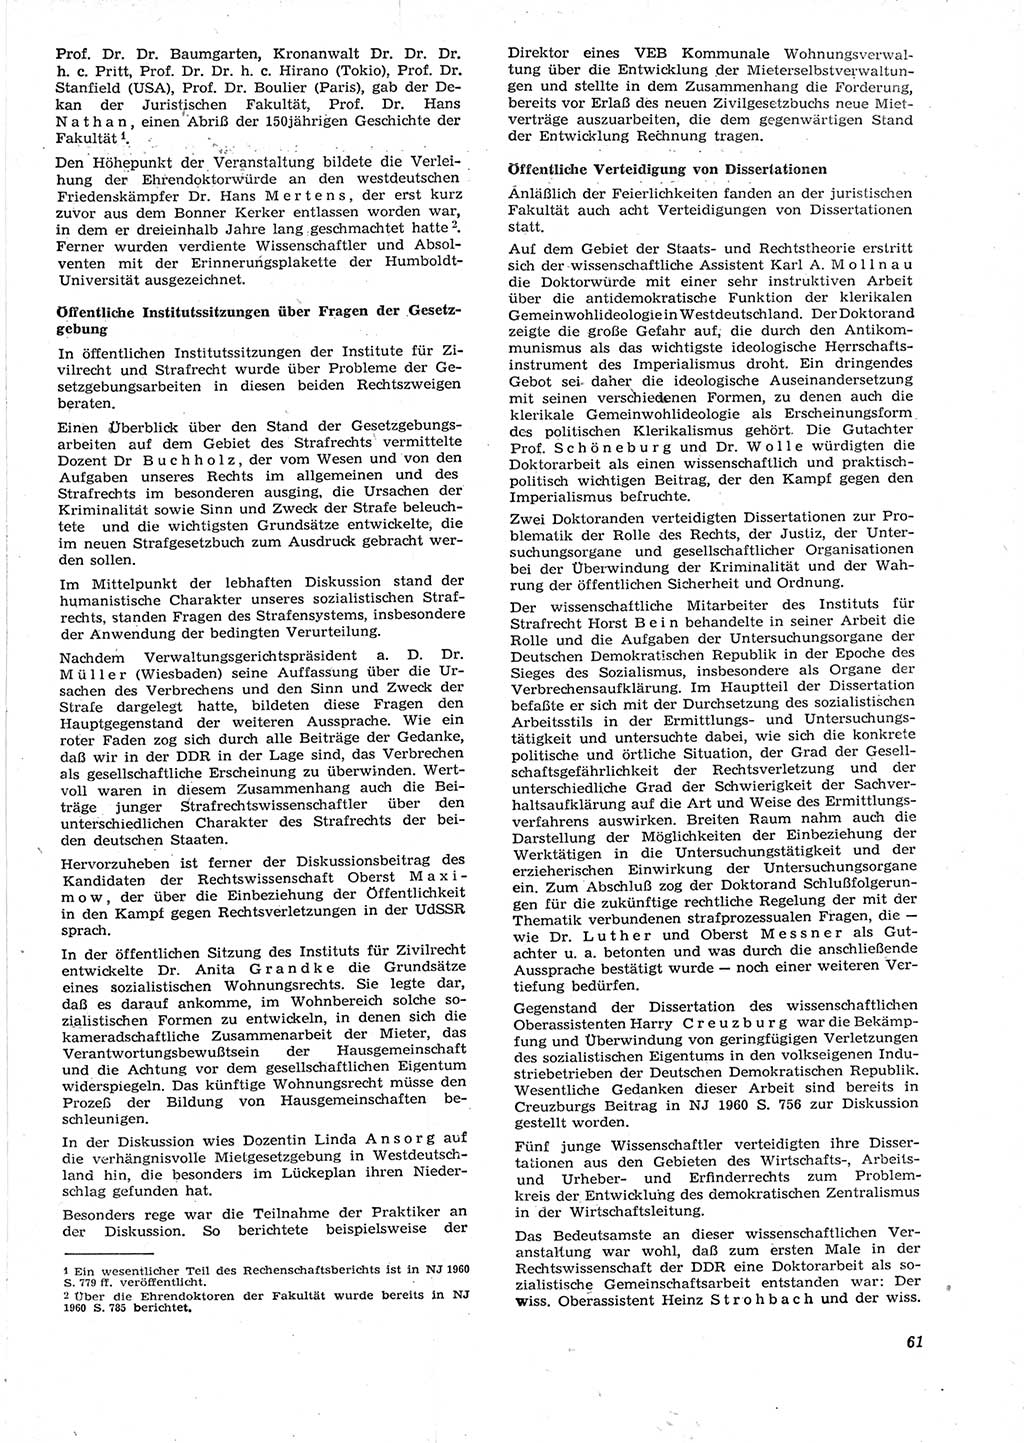 Neue Justiz (NJ), Zeitschrift für Recht und Rechtswissenschaft [Deutsche Demokratische Republik (DDR)], 15. Jahrgang 1961, Seite 61 (NJ DDR 1961, S. 61)